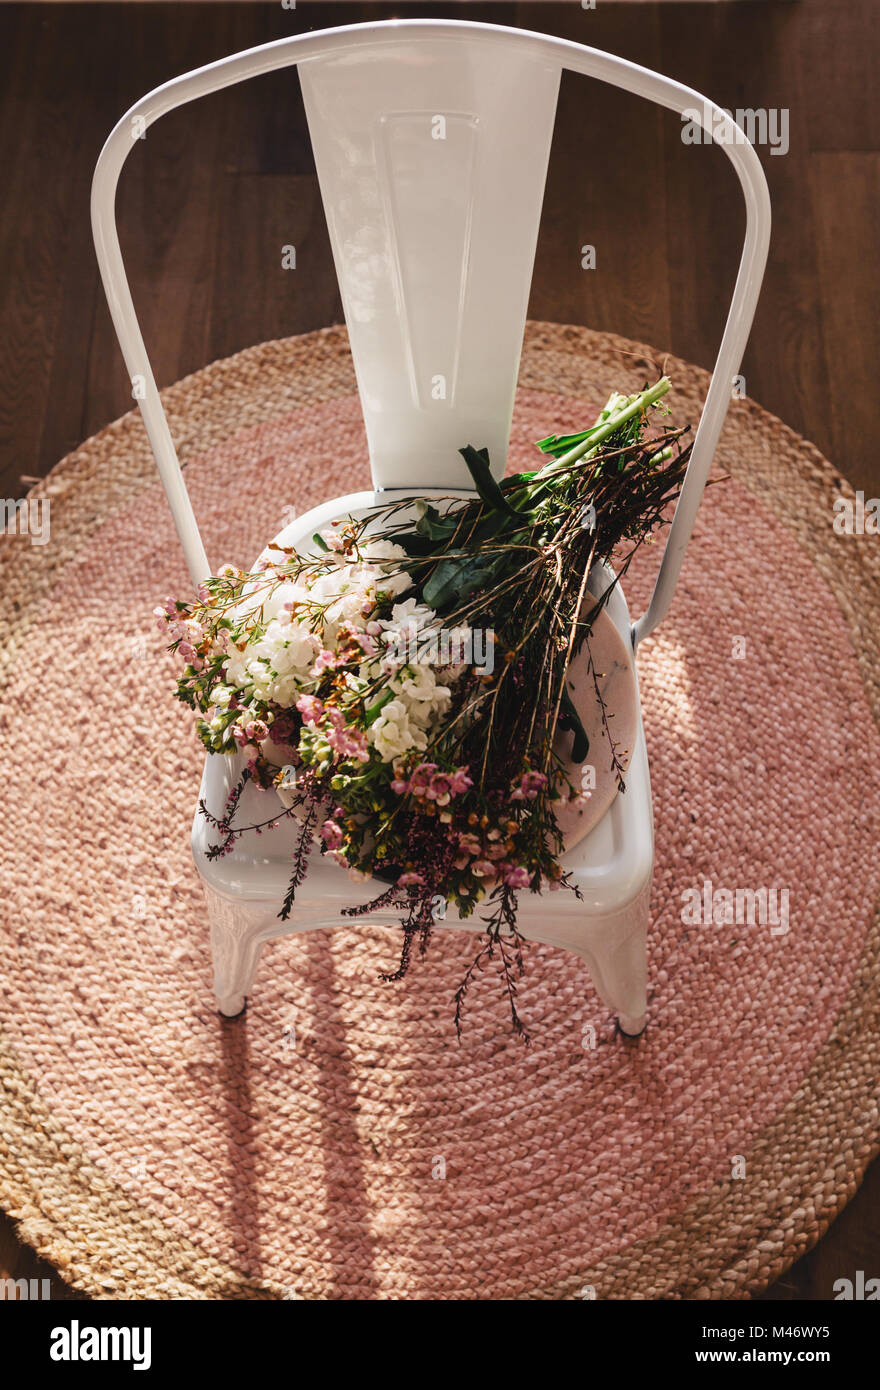 Meraviglioso mazzo di nativi fiori recisi su una sedia bianca e rosa tappeto da sopra Foto Stock